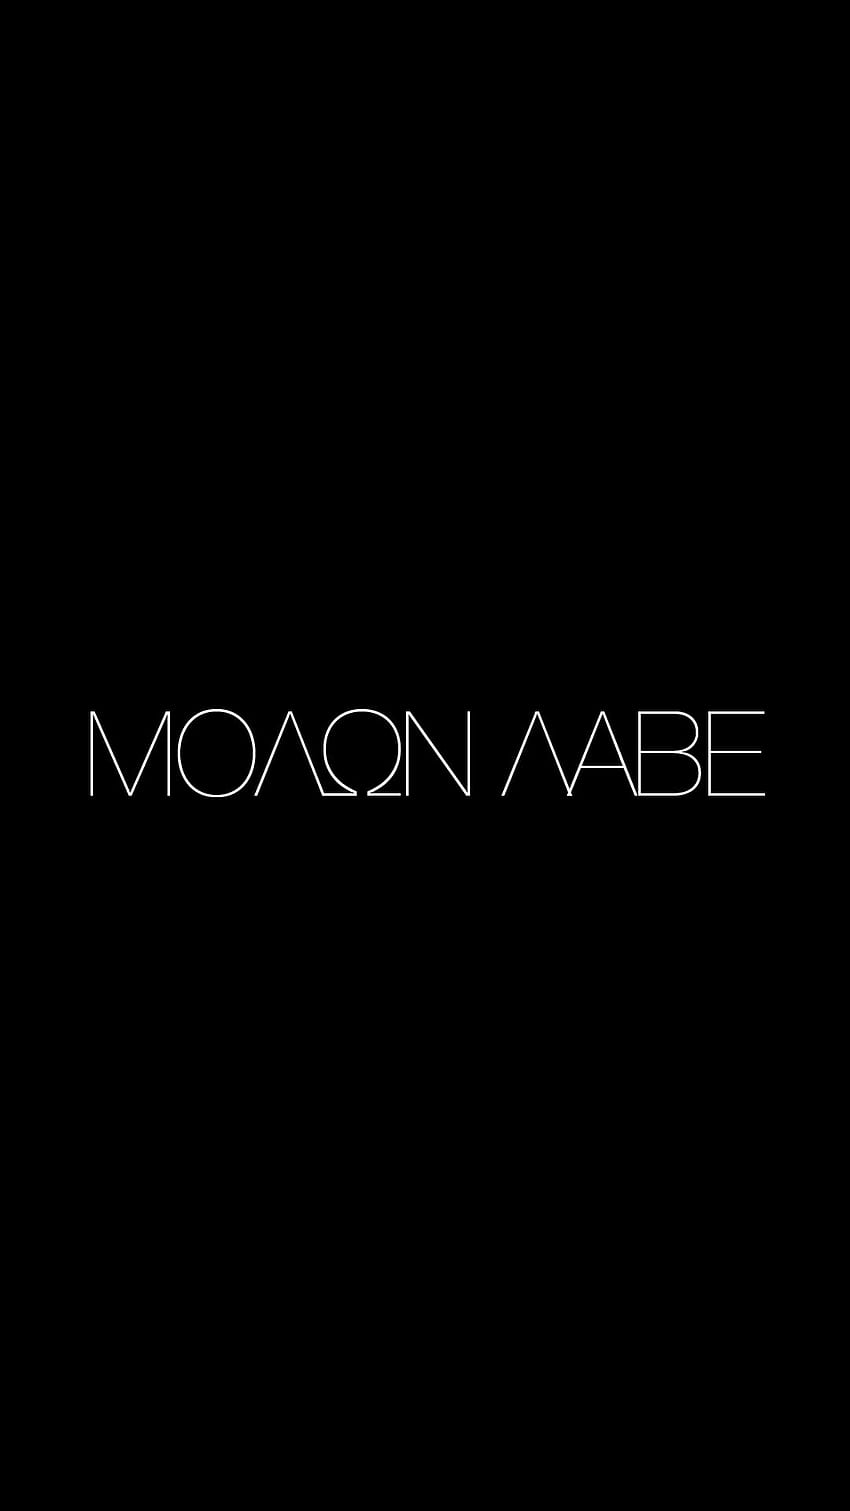 Molon Labe / Come and Take It HD phone wallpaper